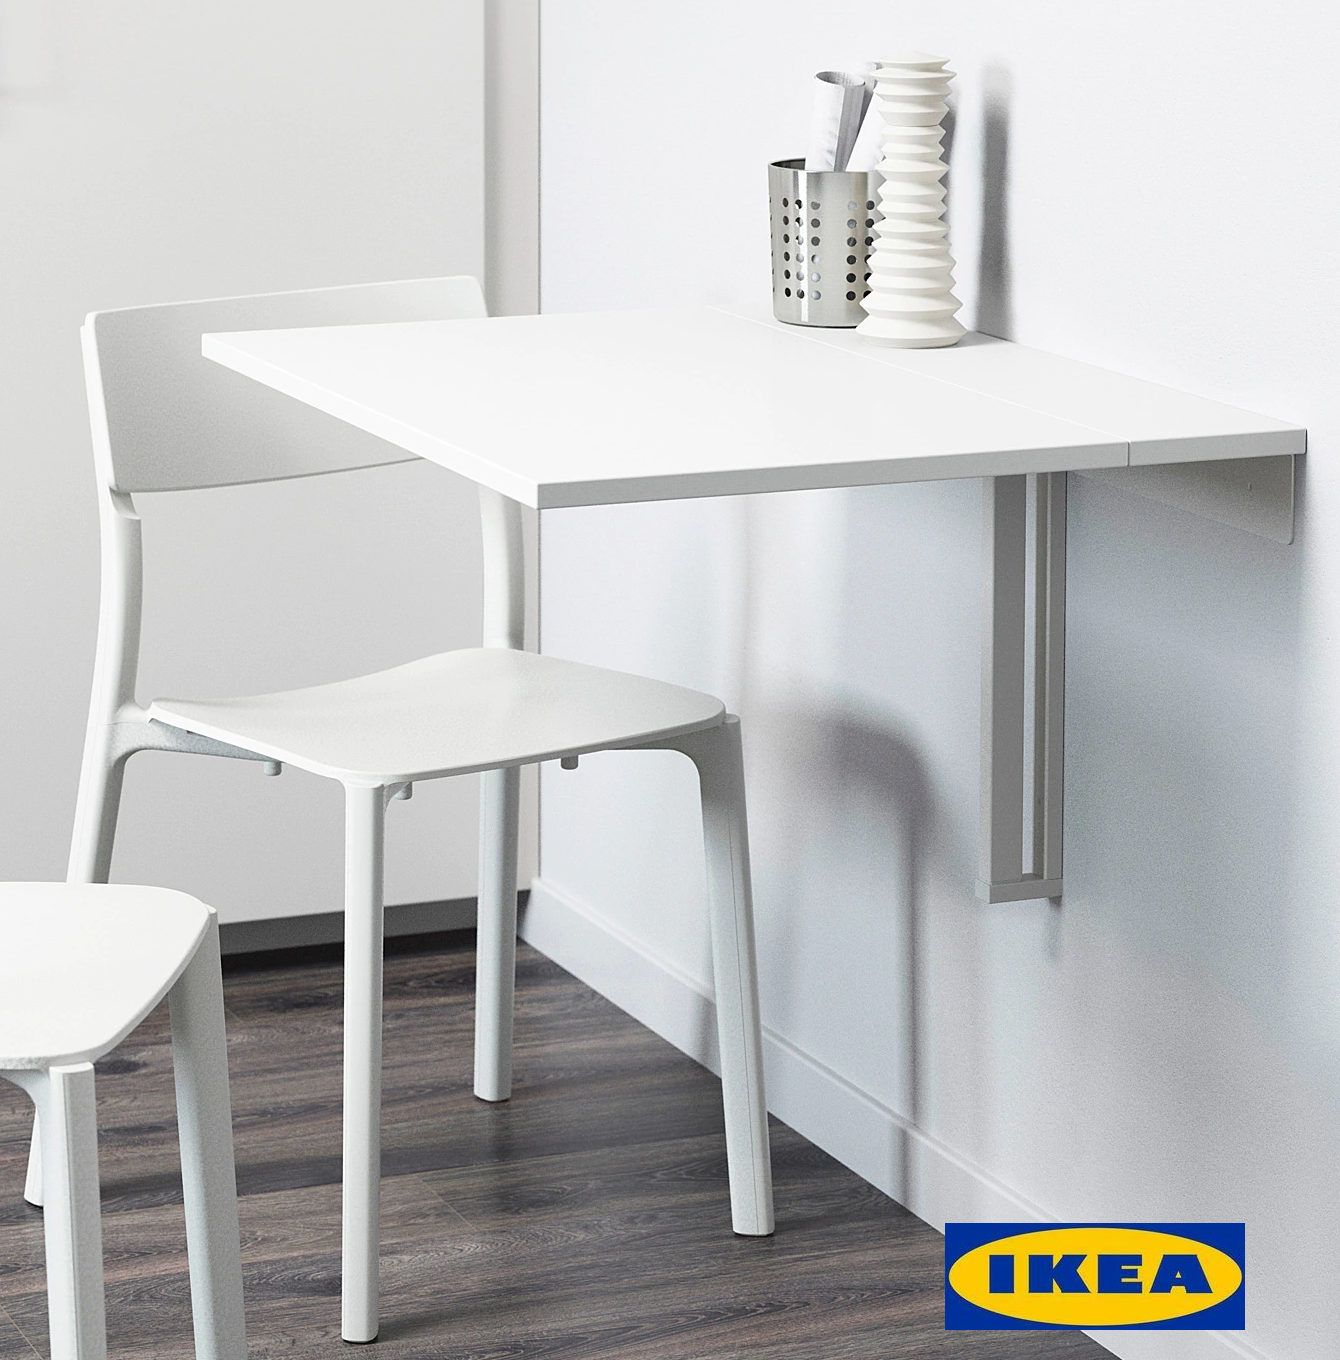 IKEA NORBERG โต๊ะพับยึดผนัง ชั้นวางของ ประหยัดพื้นที่ ไม้จริง สีขาว